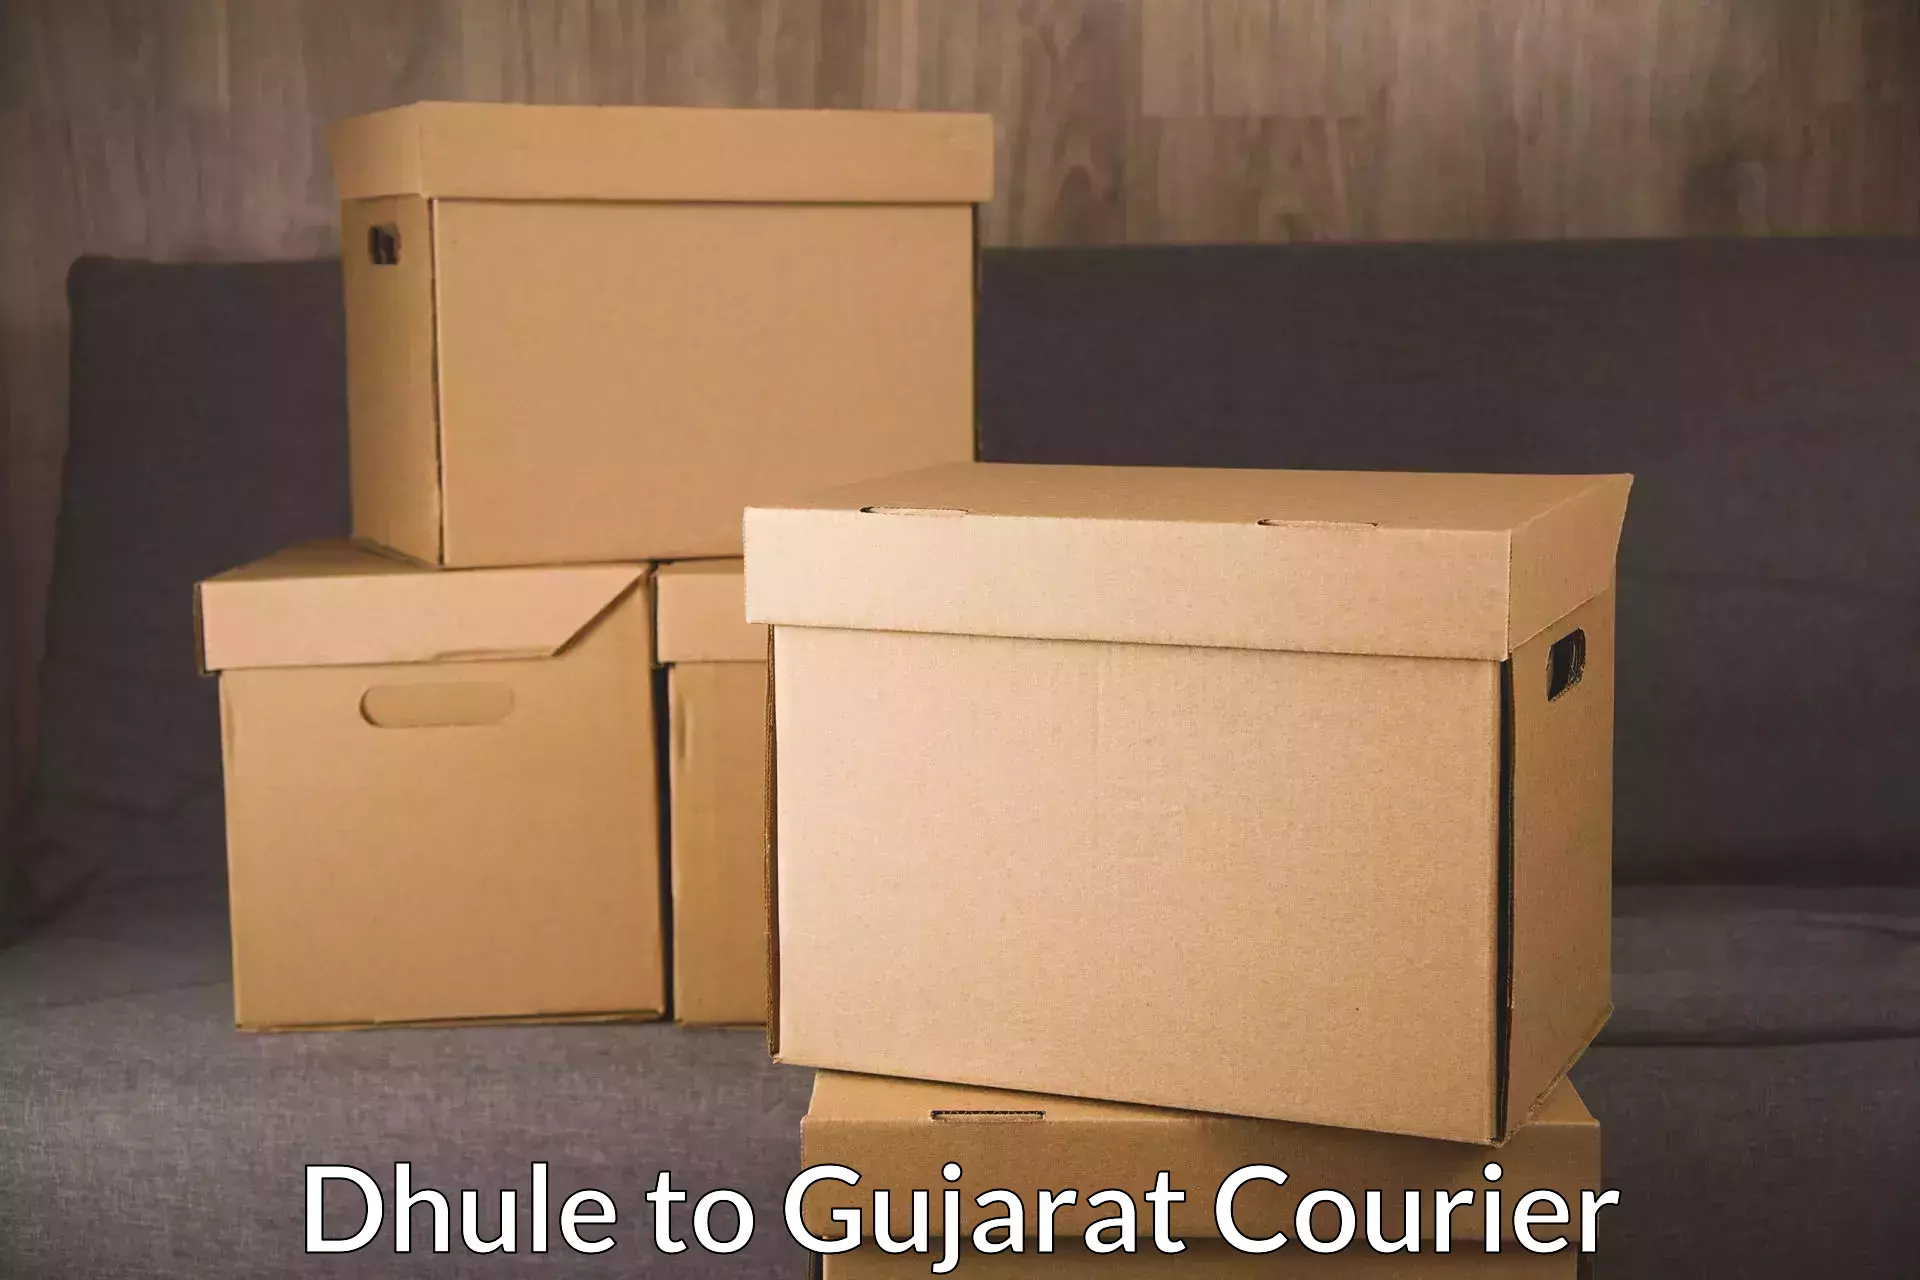 Global shipping networks Dhule to Vyara